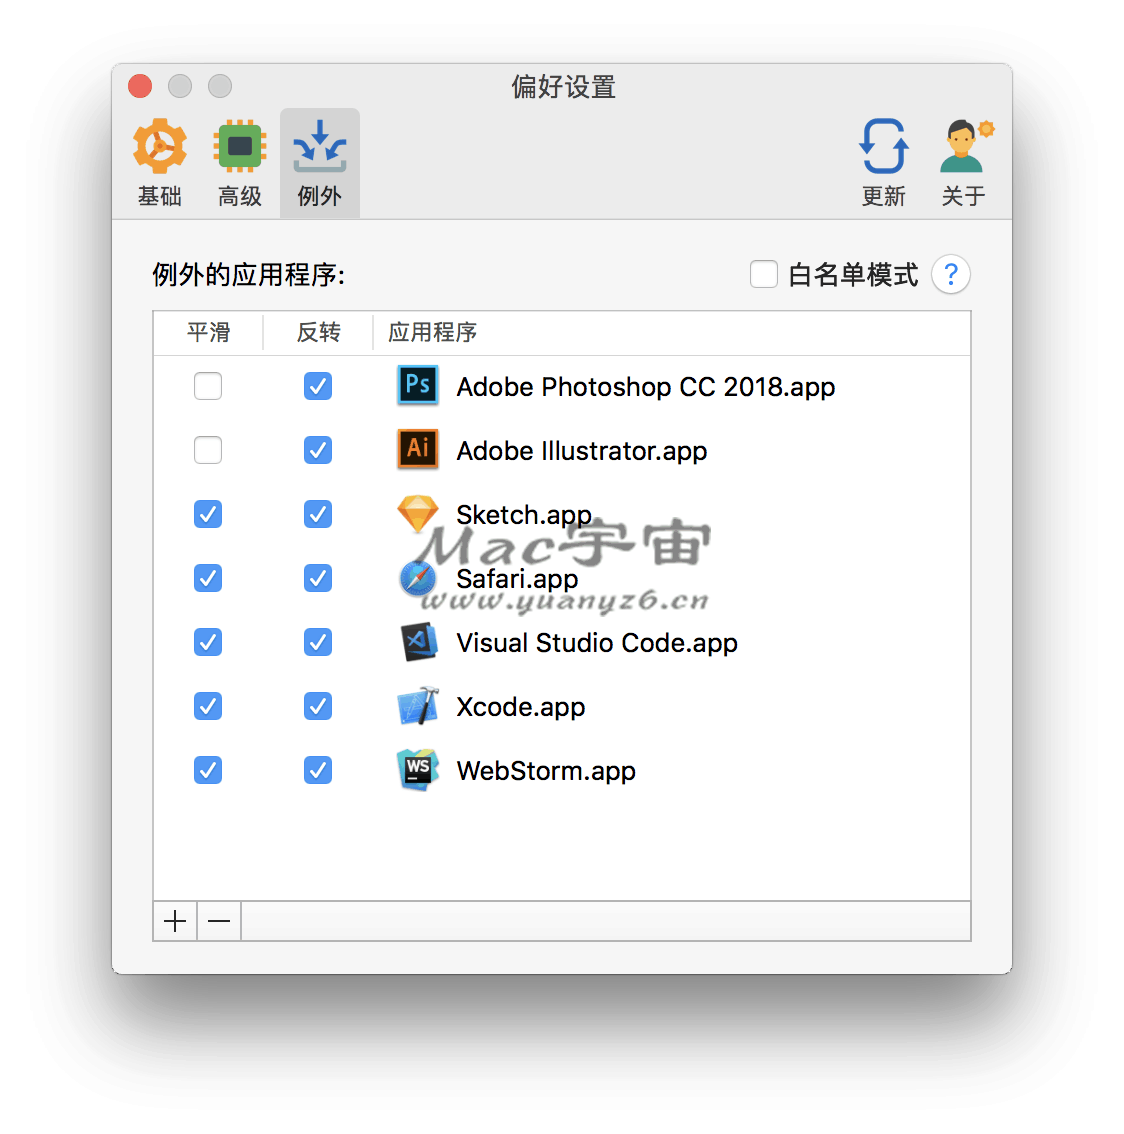 Mos for Mac v3.3.2 中文版 让鼠标平滑滚动 苹果电脑